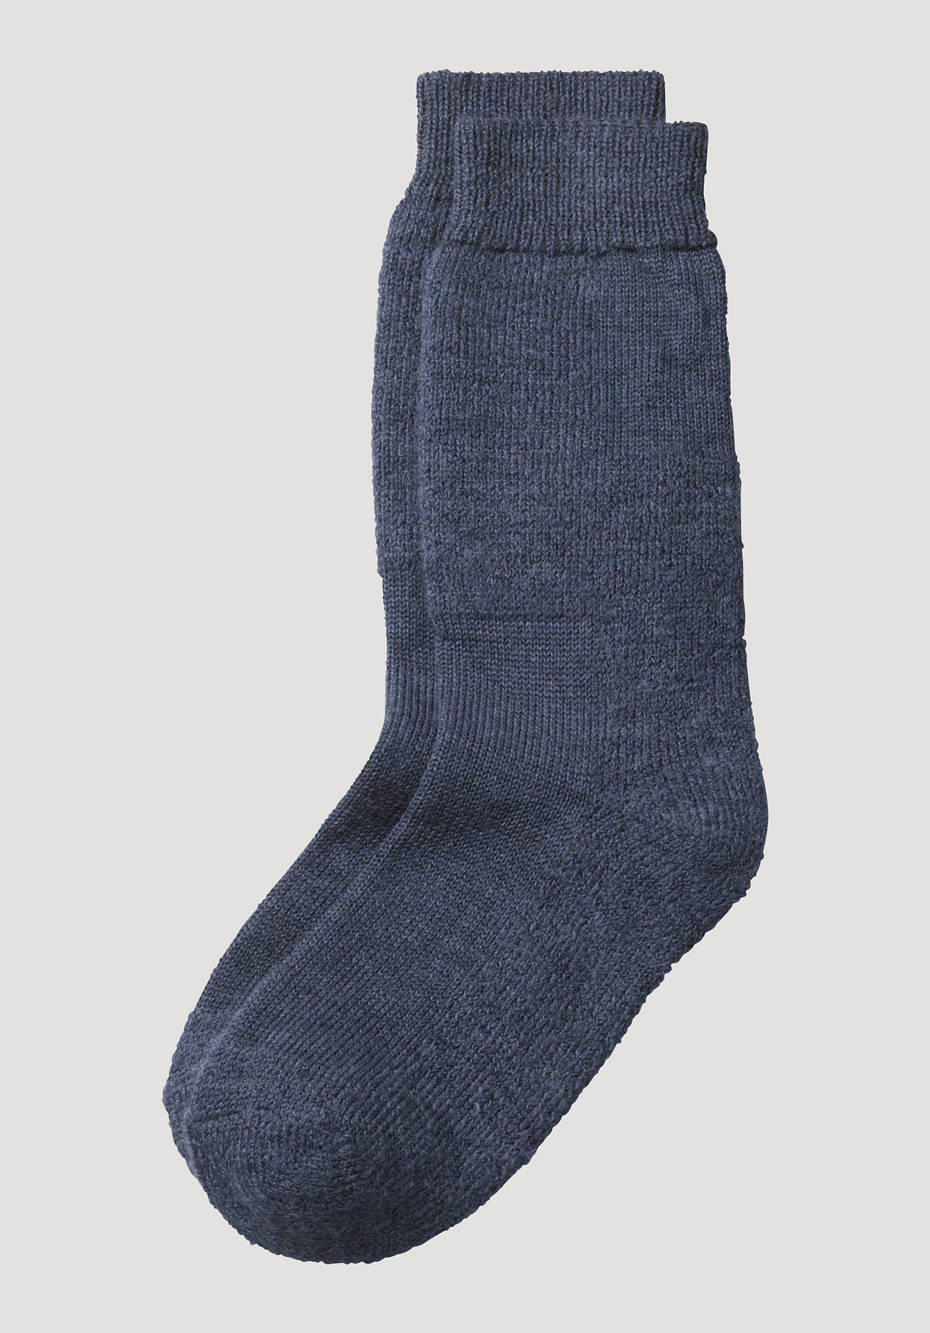 Hiking socks made from pure organic merino wool